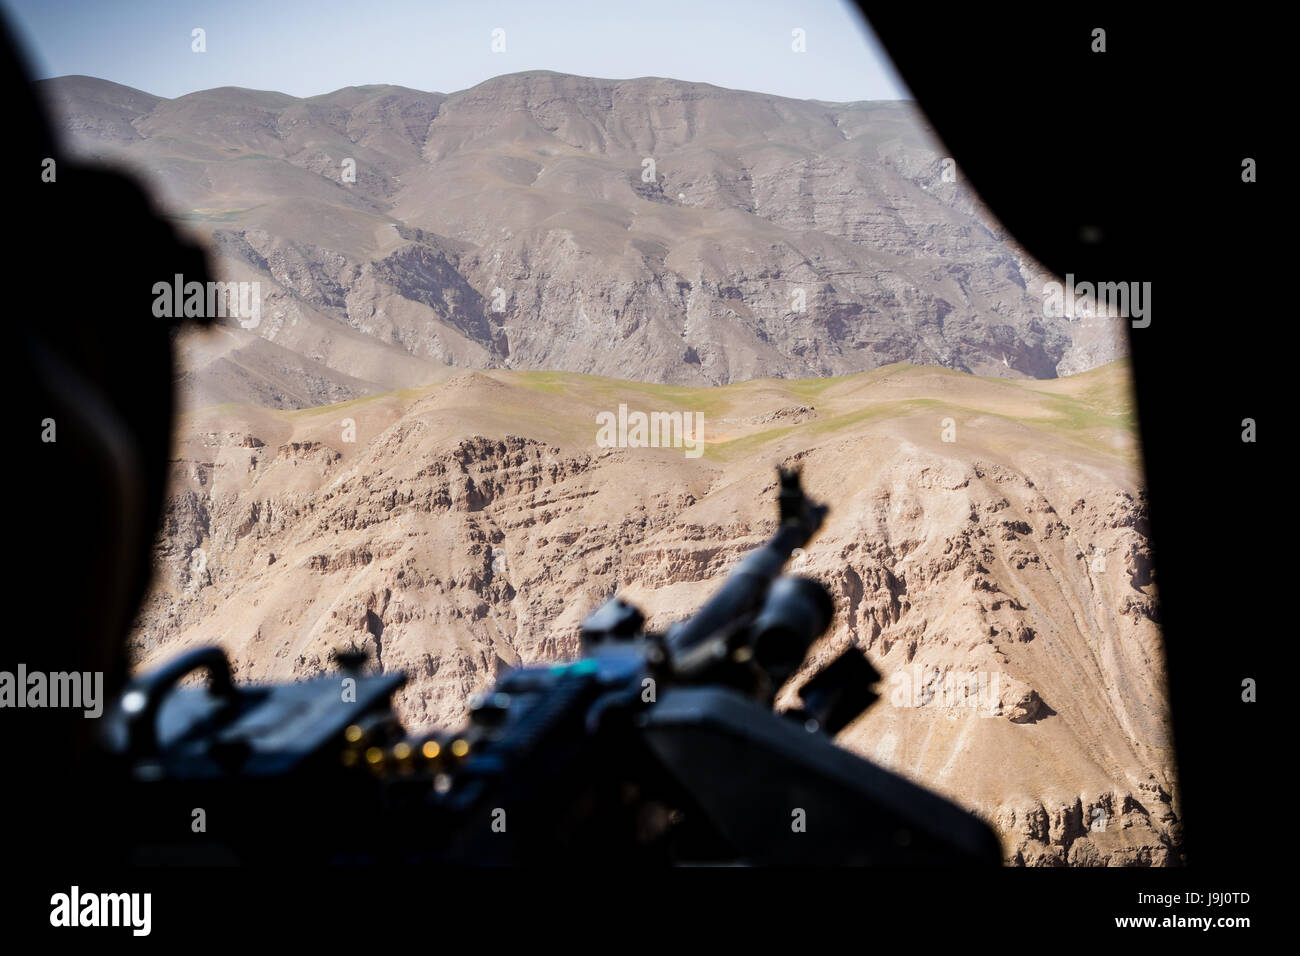 Ein US-Army Tür Schütze die Hügel während eines Fluges in einem UH-60 Black Hawk Hubschrauber, Task Force Griffin, 16. Combat Aviation Brigade zugewiesen Uhren lädt Waffen und Treibstoff vor der Abfahrt auf einer Mission zur Unterstützung der Operation entschlossen unterstützen 1. Mai 2017 in Kunduz, Afghanistan. Kunduz hat erhöhten Aktivität der Taliban als mehr als 8.000 US-Soldaten und 6.000 von NATO und NATO-Staaten weiterhin die Regierung zu unterstützen. Stockfoto